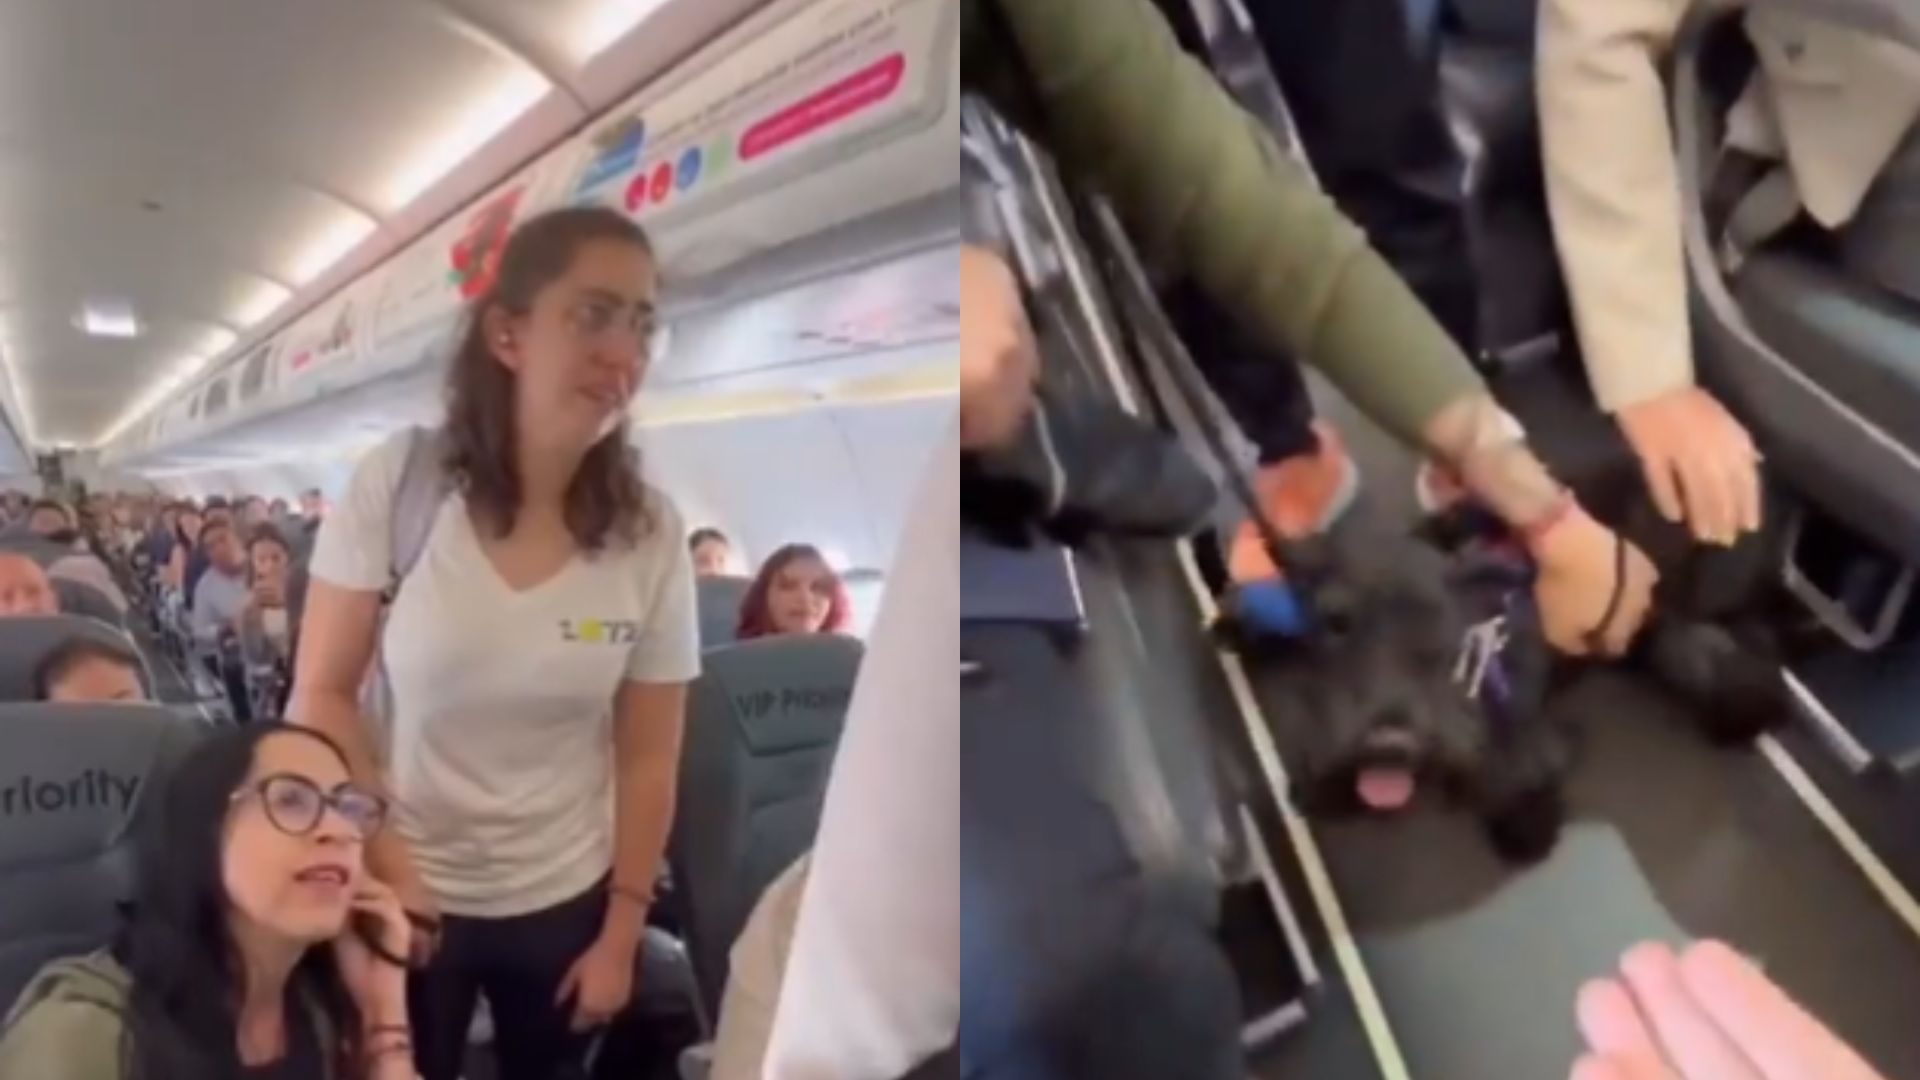 Vídeo: Passageira é retirada de voo e proibida de viajar com cachorro de apoio emocional e caso gera revolta na web; assista